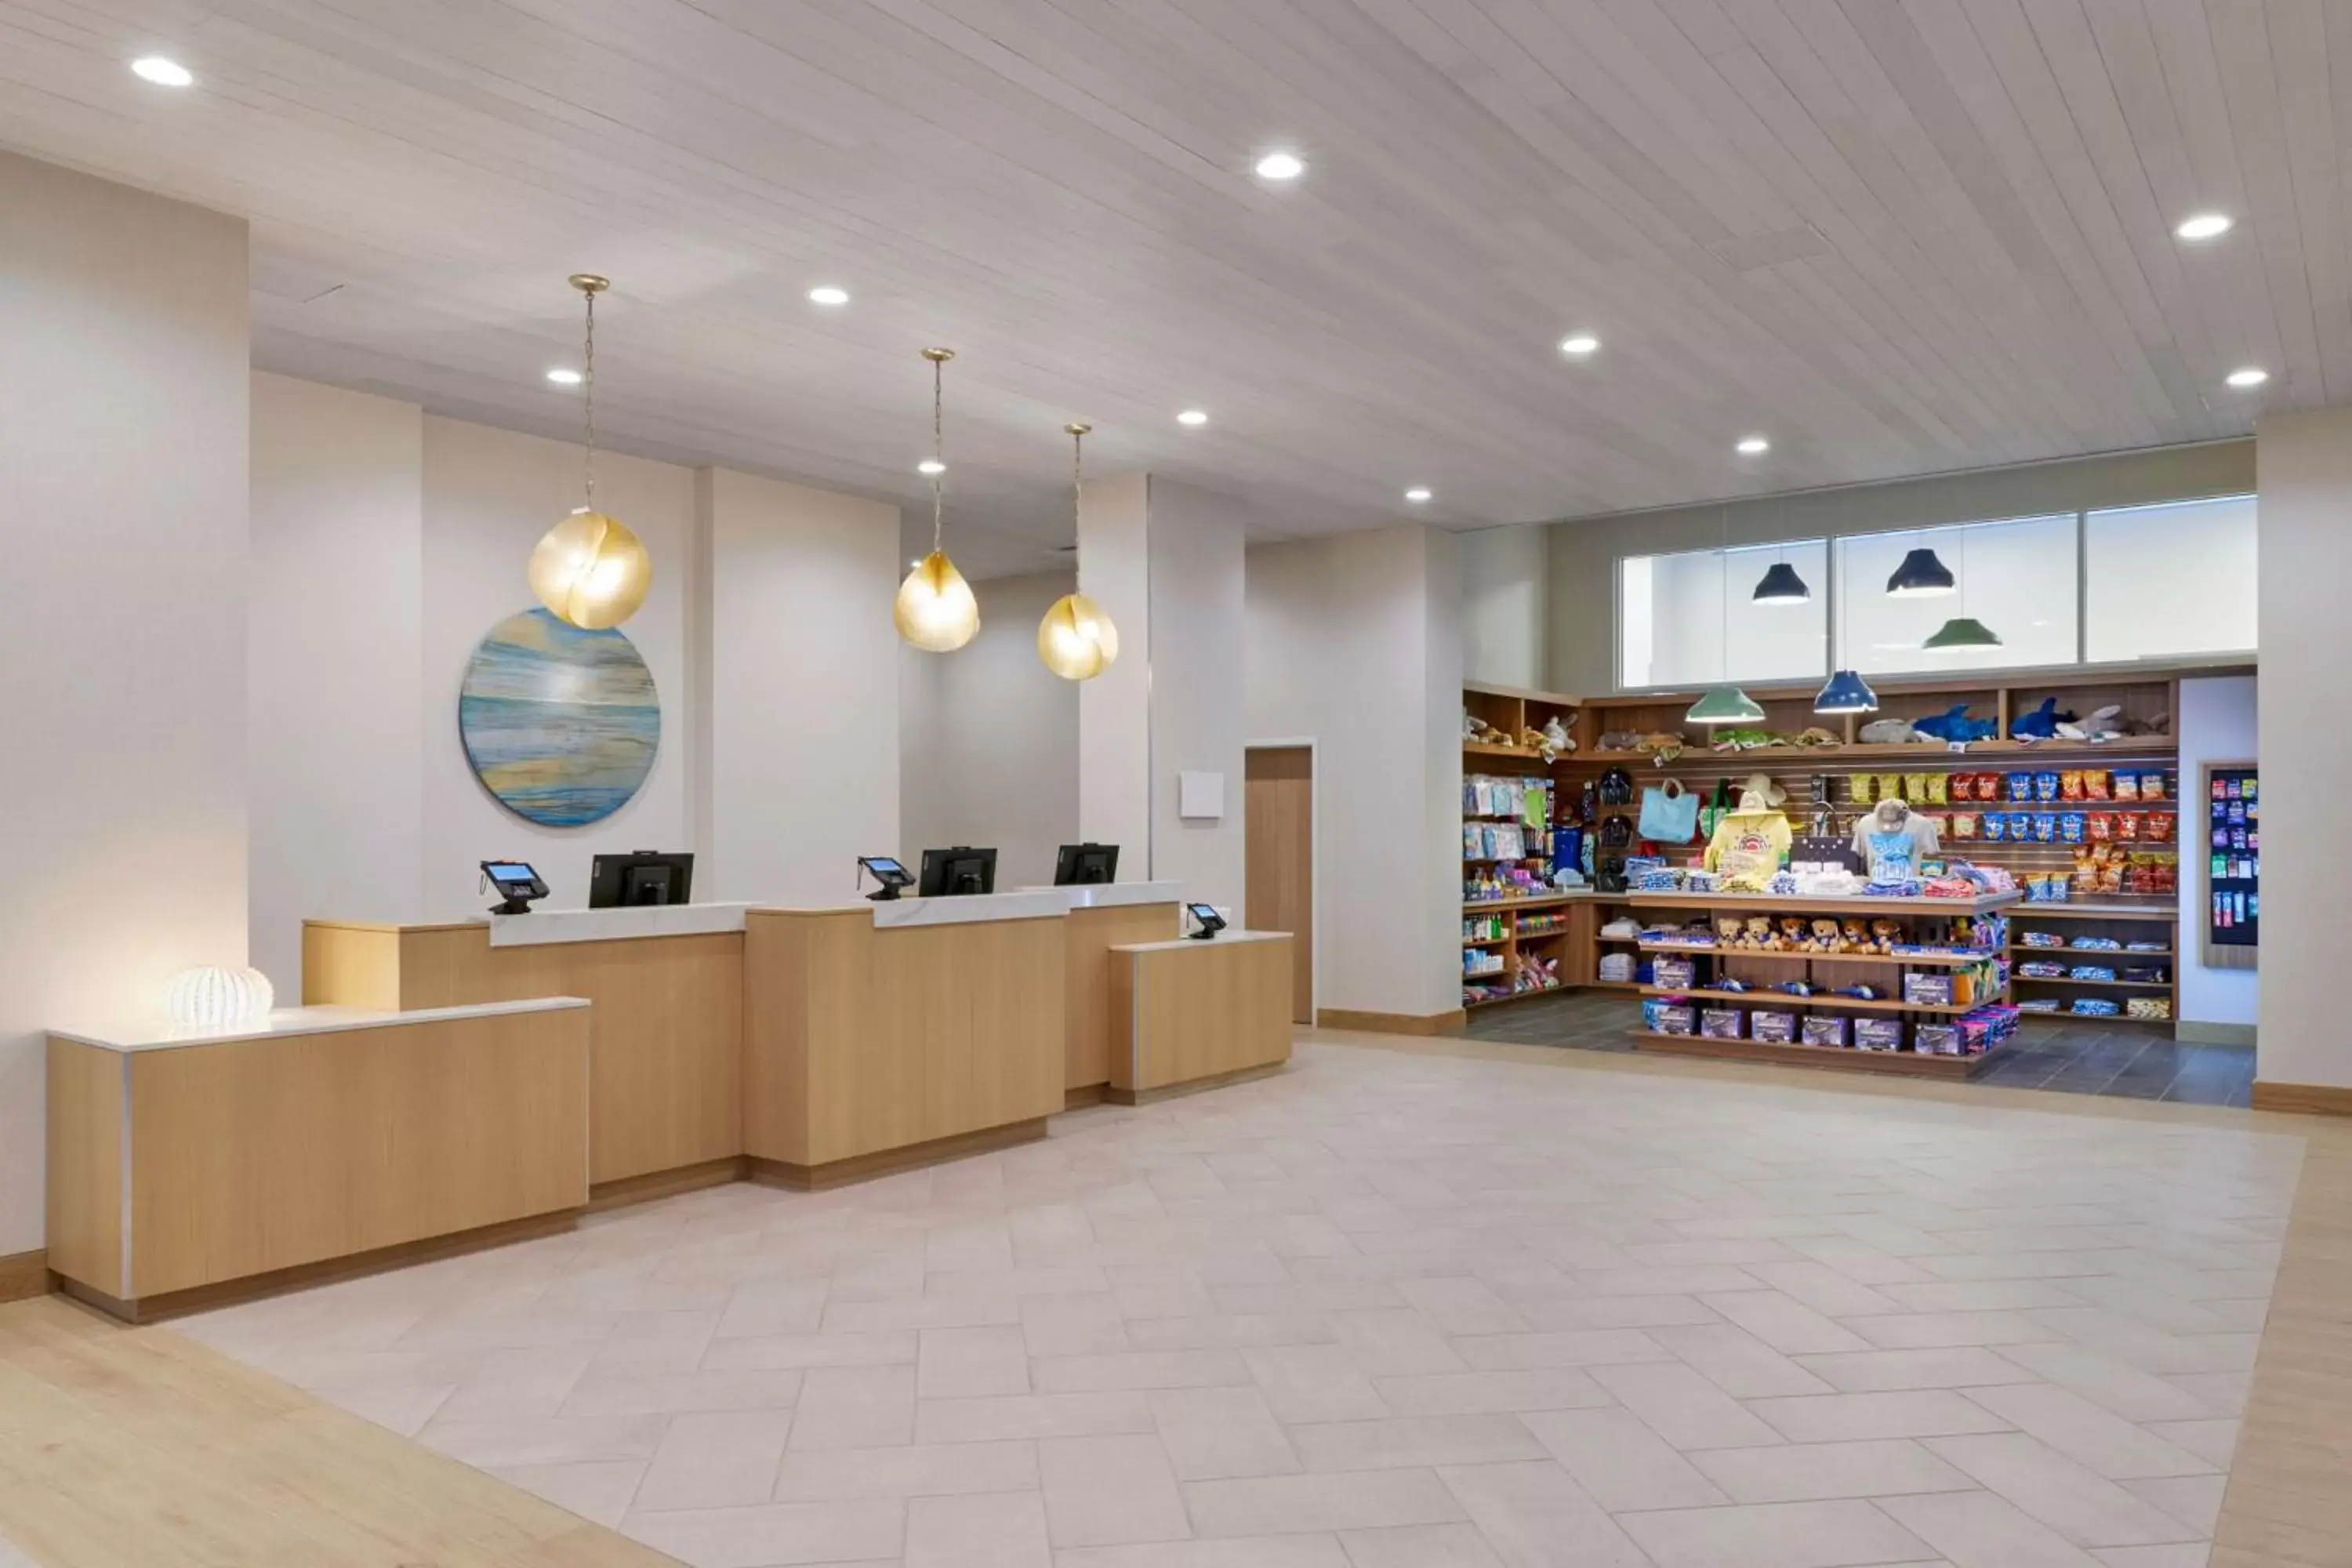 Lobby or reception in Fairfield by Marriott Inn & Suites Pensacola Beach